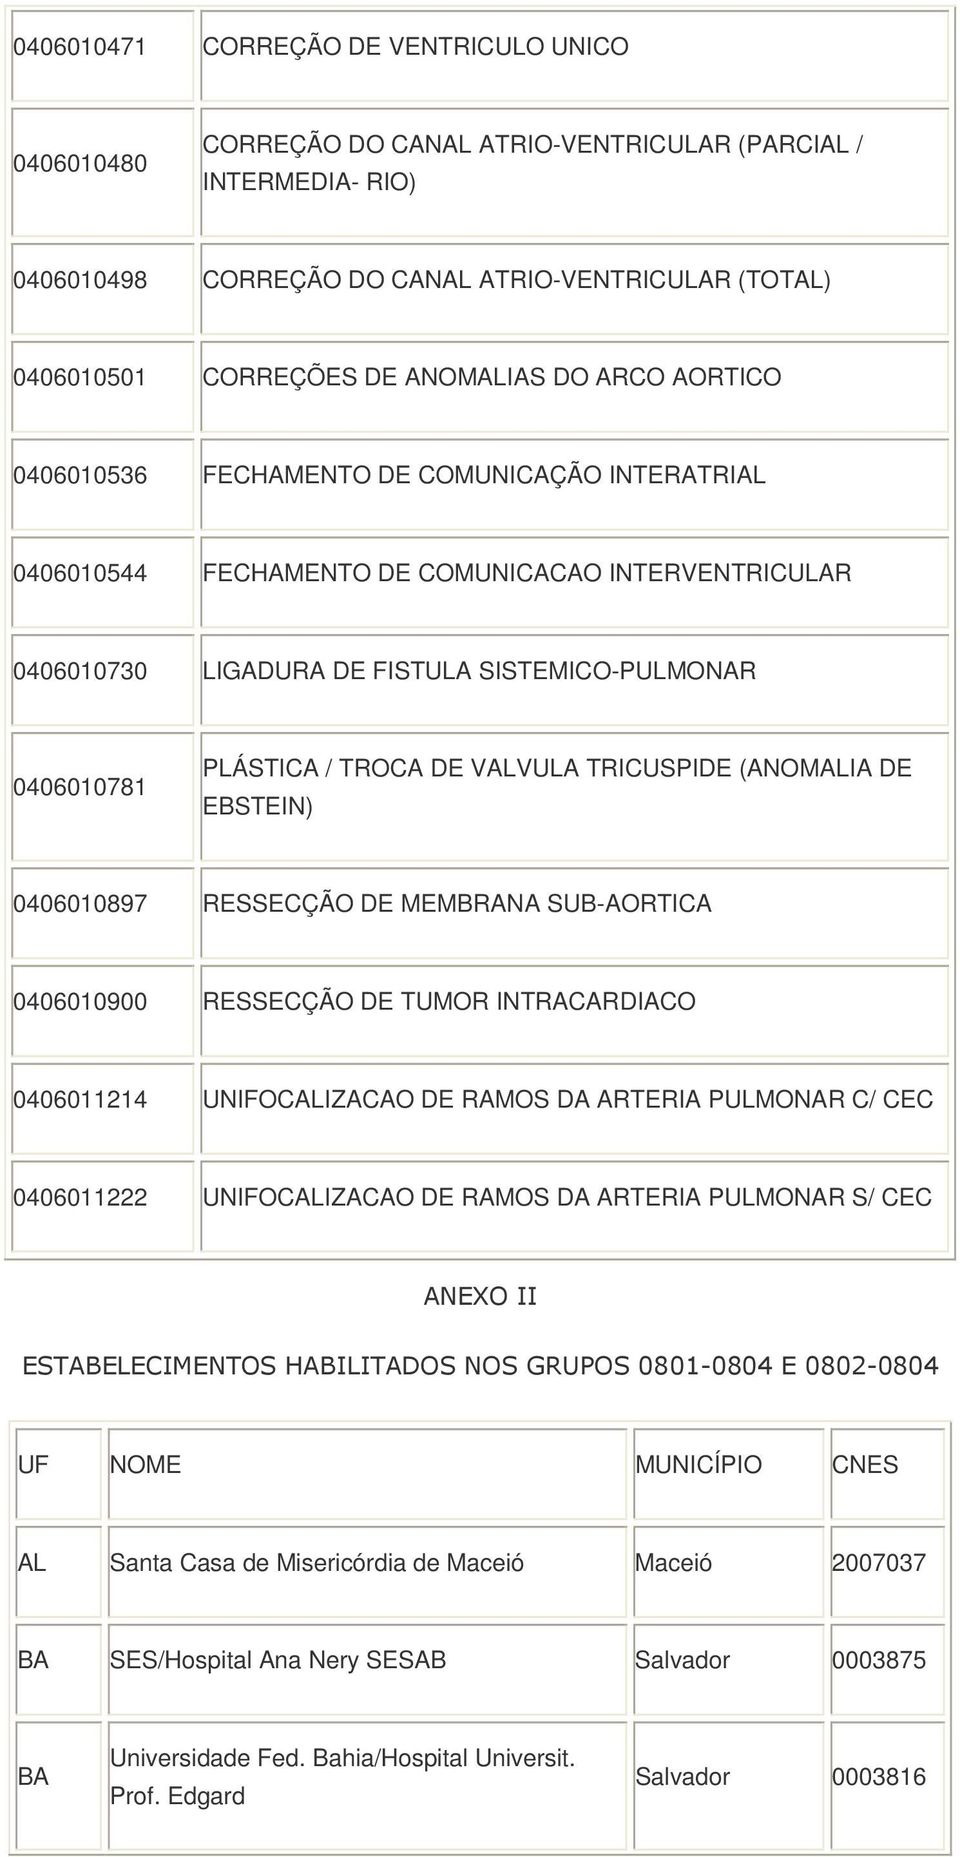 TROCA DE VALVULA TRICUIDE (ANOMALIA DE EBSTEIN) 0406010897 RESSECÇÃO DE MEMBRANA SUB-AORTICA 0406010900 RESSECÇÃO DE TUMOR INTRACARDIACO 0406011214 UNIFOCALIZACAO DE RAMOS DA ARTERIA PULMONAR C/ CEC